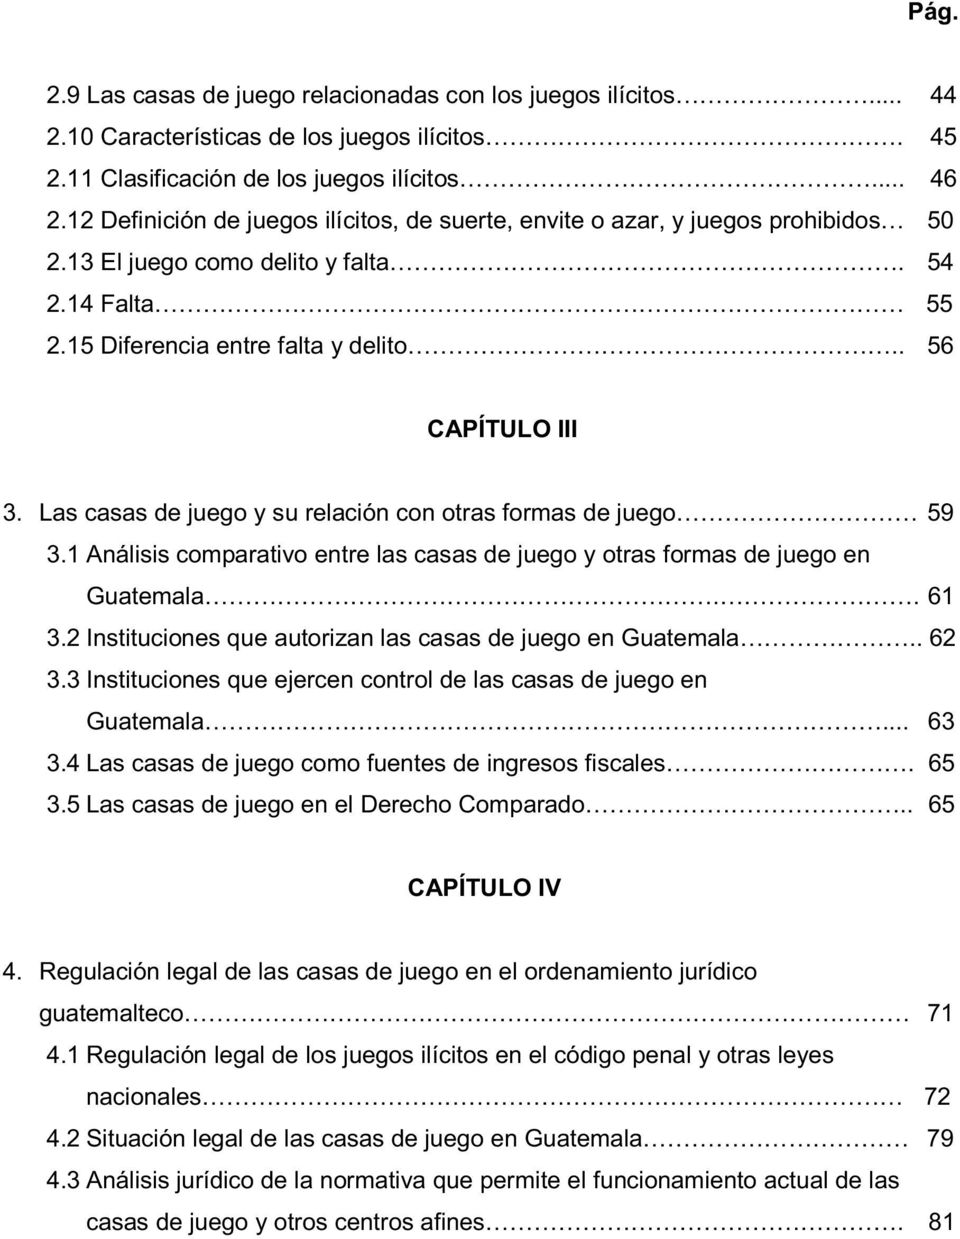 Las casas de juego y su relación con otras formas de juego 59 3.1 Análisis comparativo entre las casas de juego y otras formas de juego en Guatemala.. 61 3.